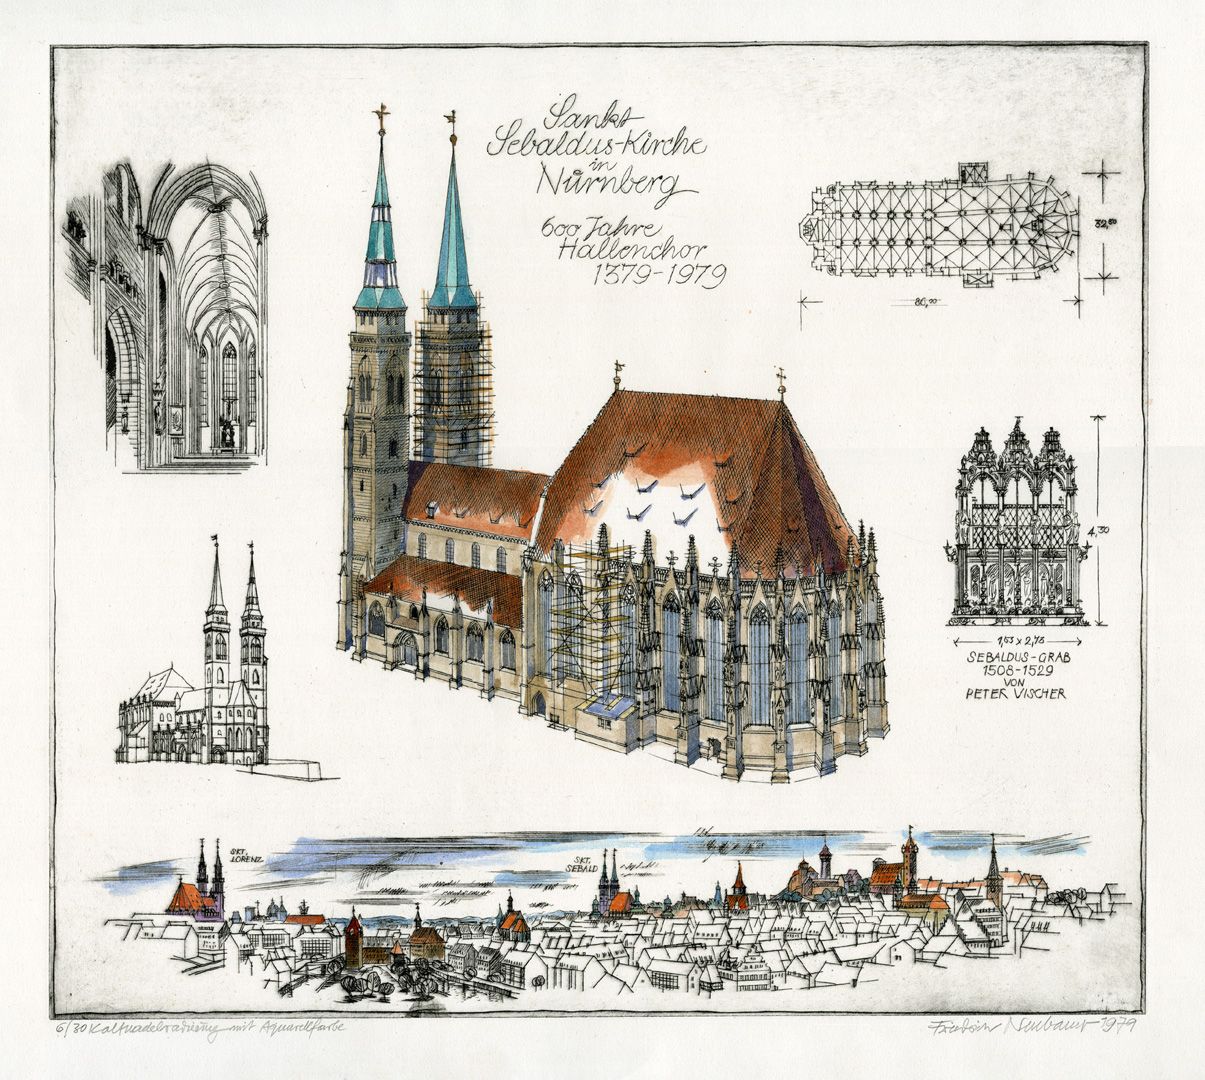 St. Sebalduskirche in Nürnberg, 600 Jahre Hallenchor 1379 - 1979 